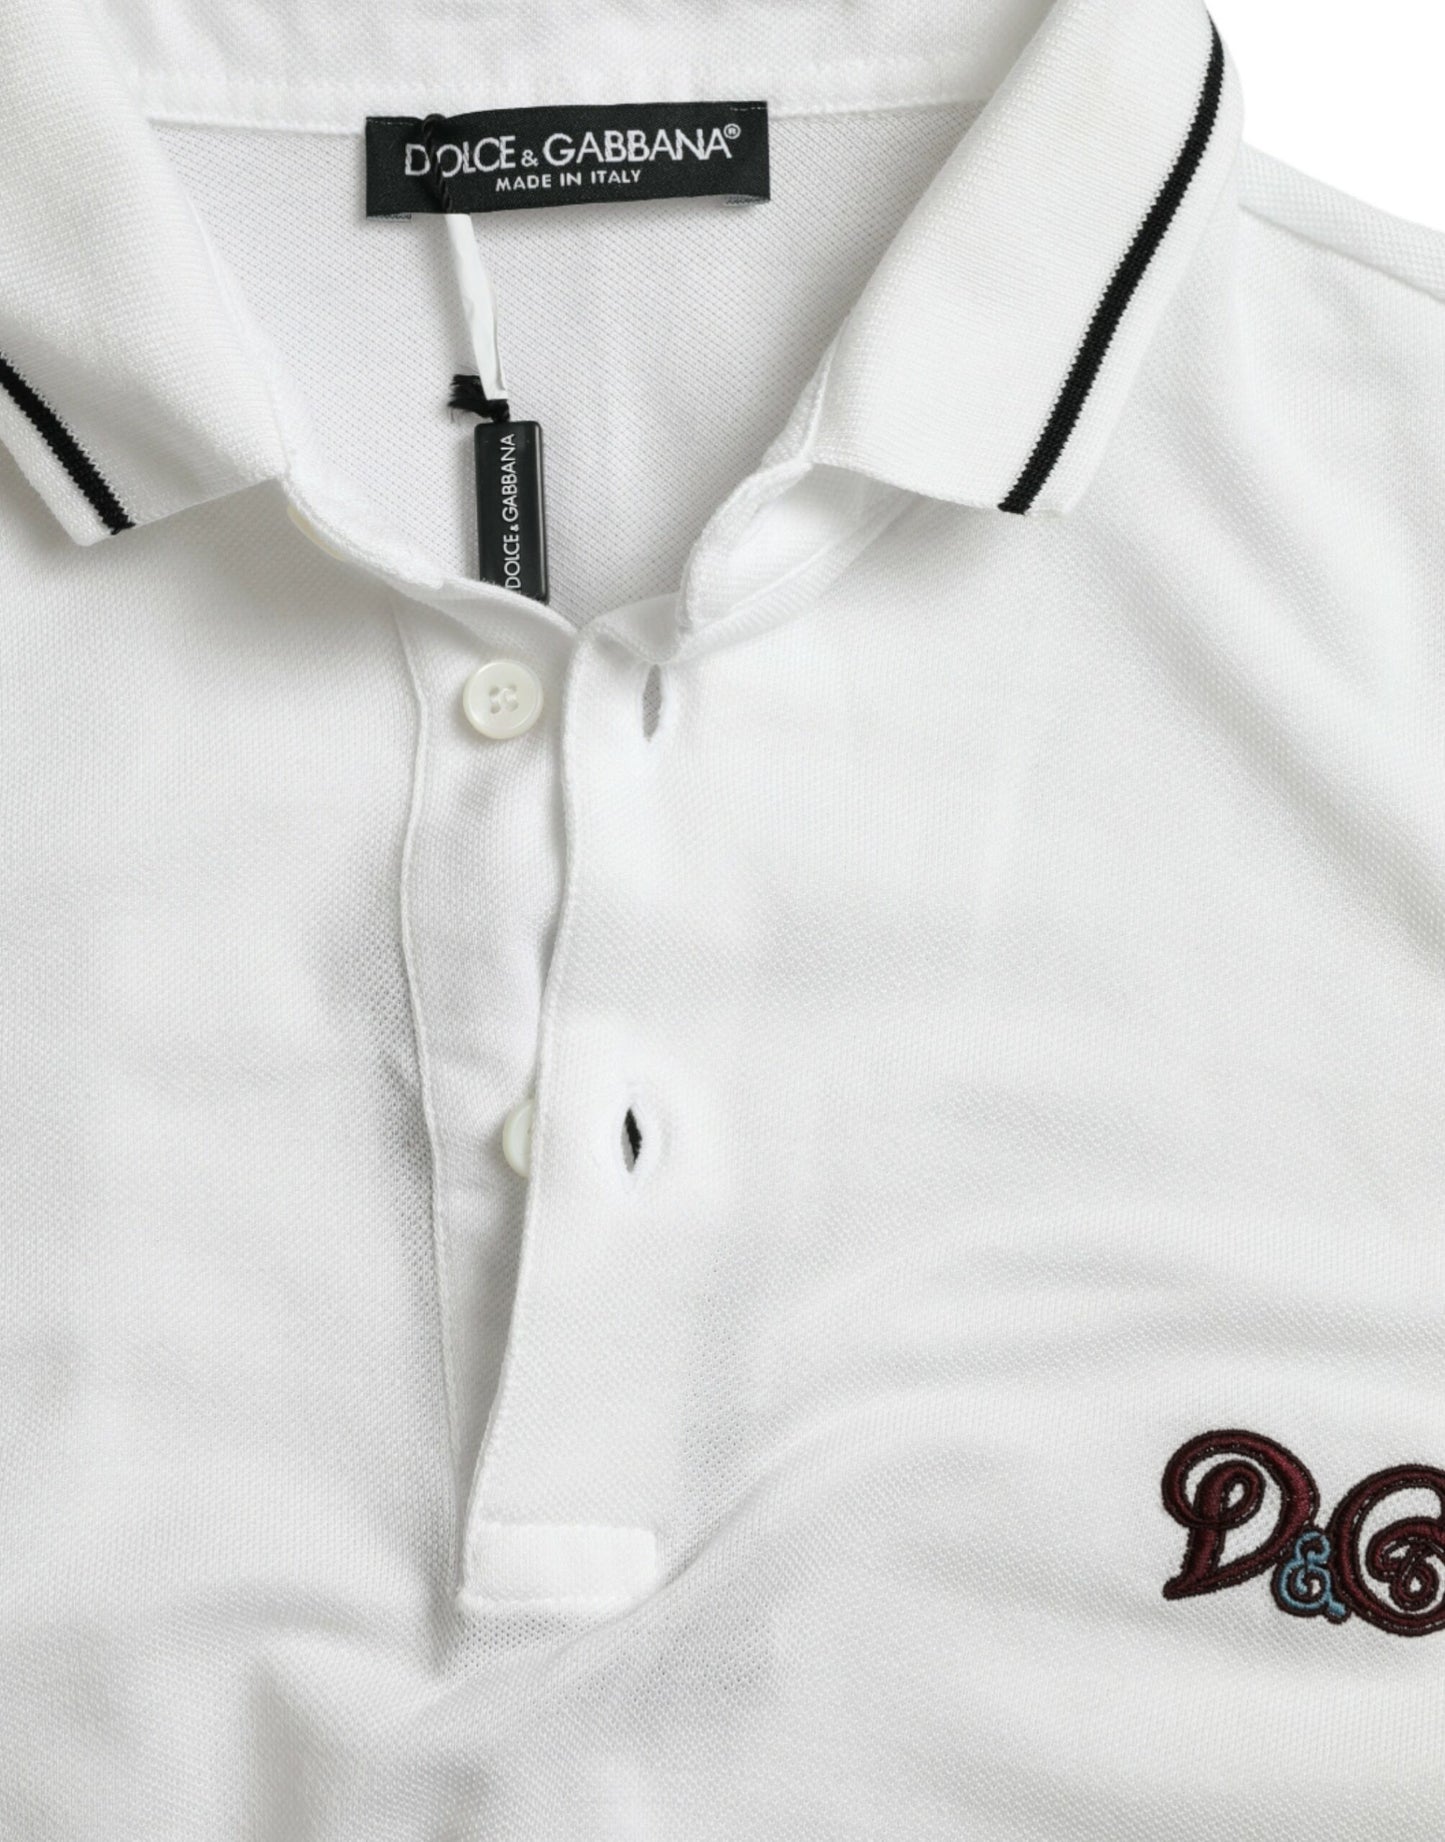 Dolce & Gabbana White Logo Polo Shirt